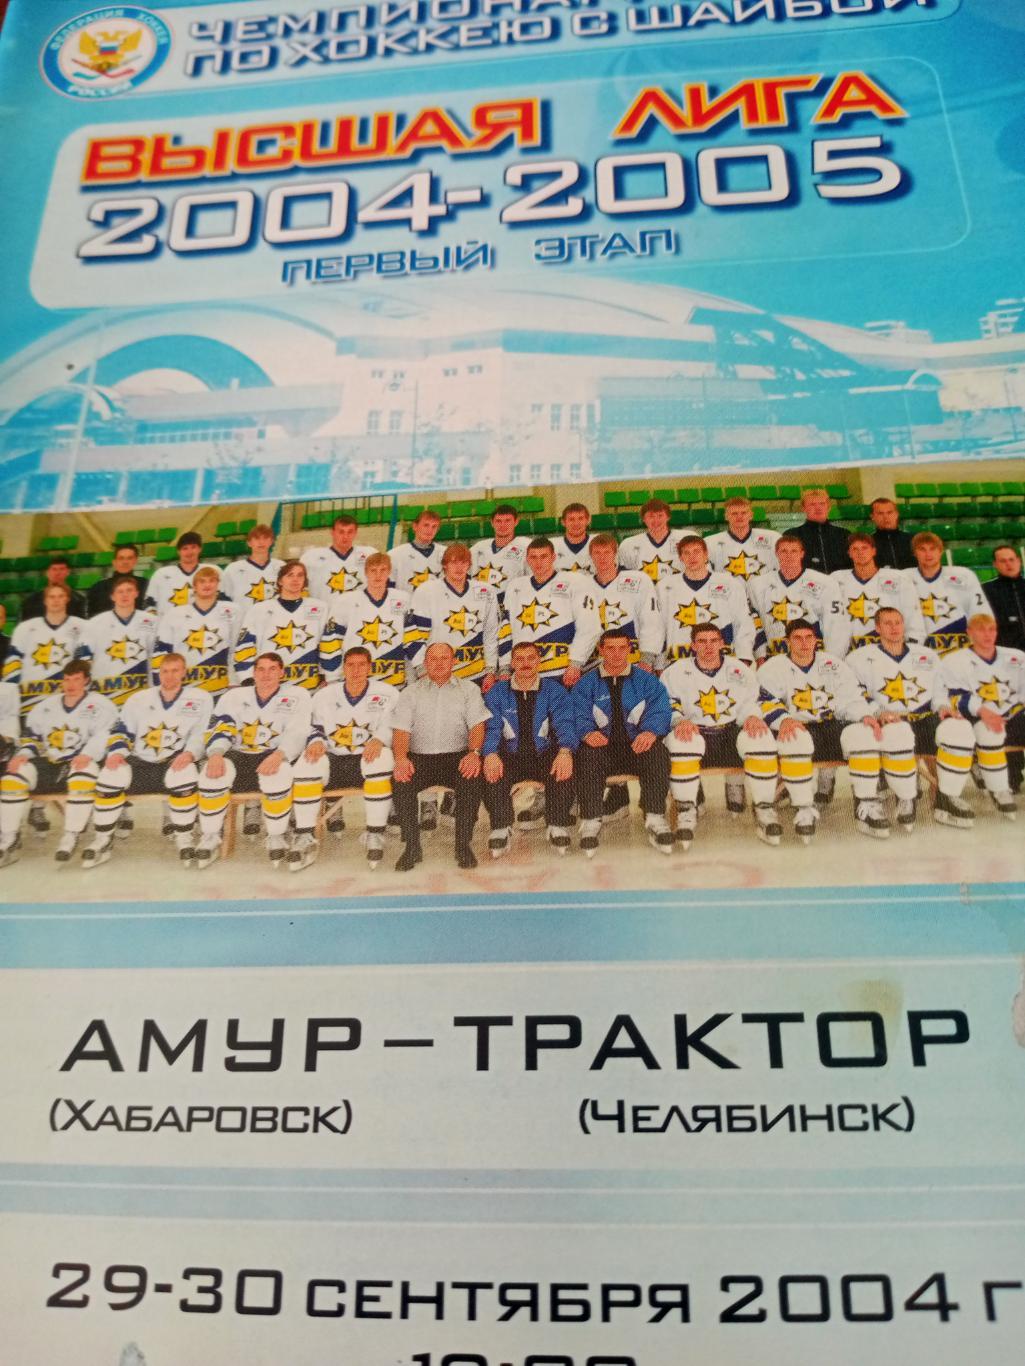 Амур Хабаровск - Трактор Челябинск. 29 и 30 сентября 2004 год